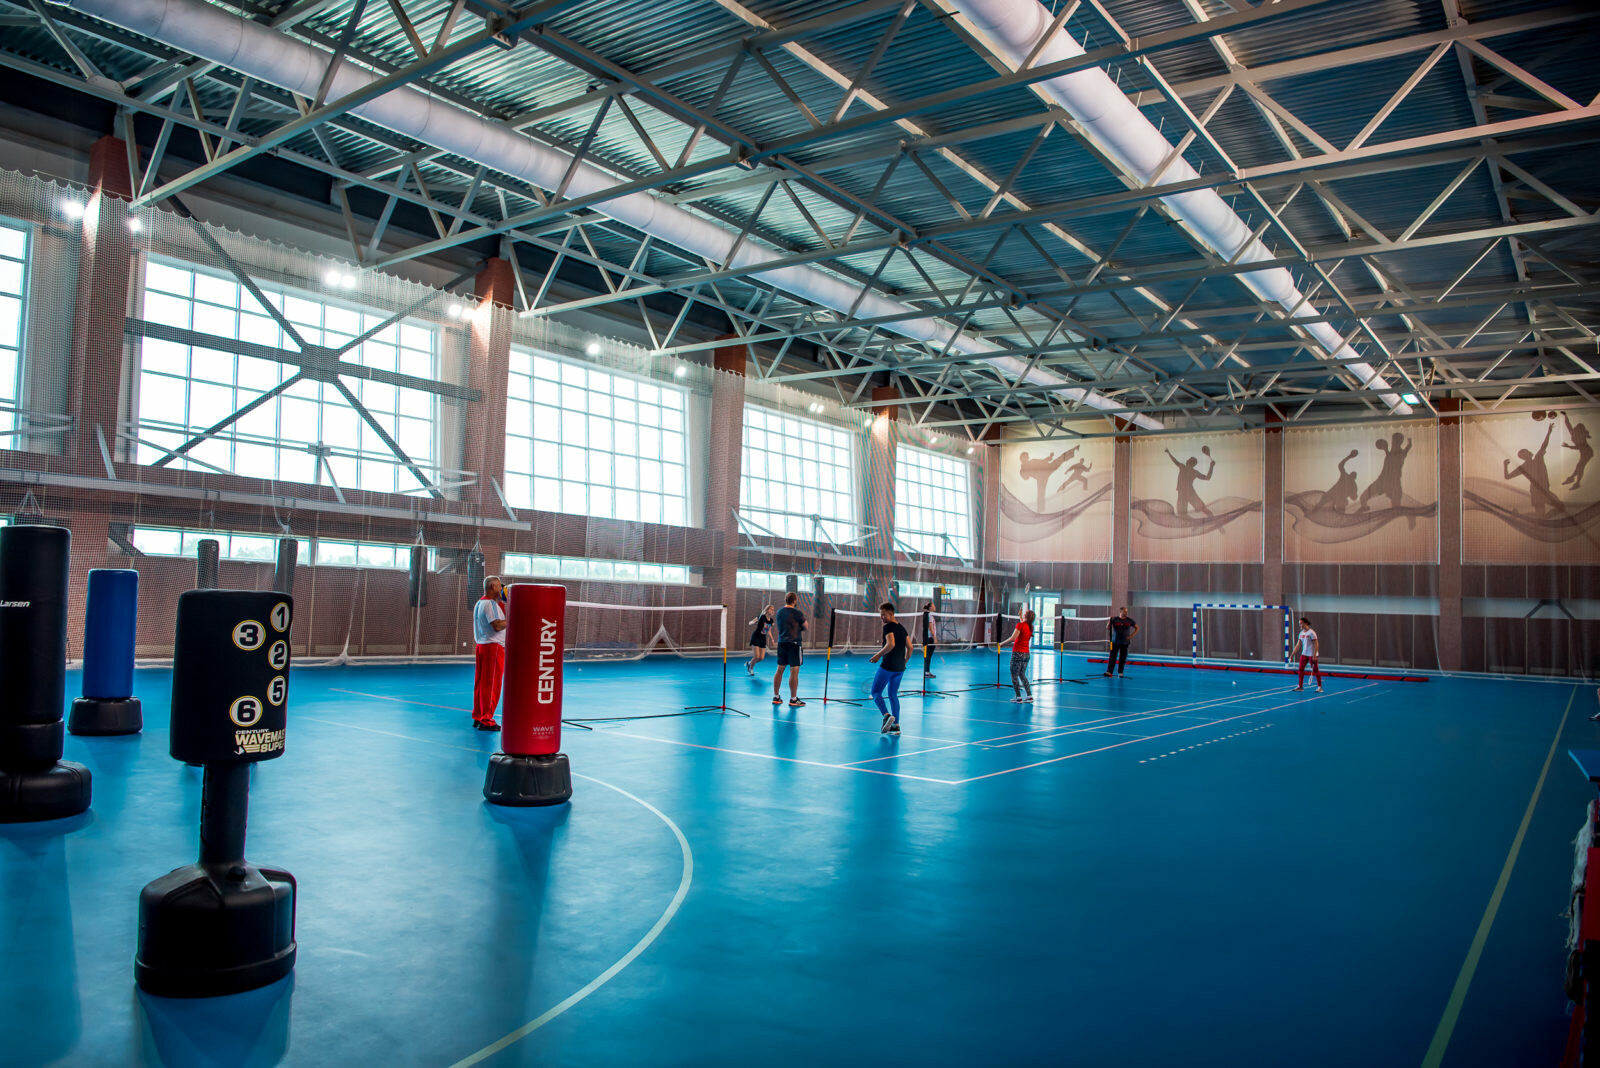 Спортивный зал в физкультурном комплексе «Парамоново» 